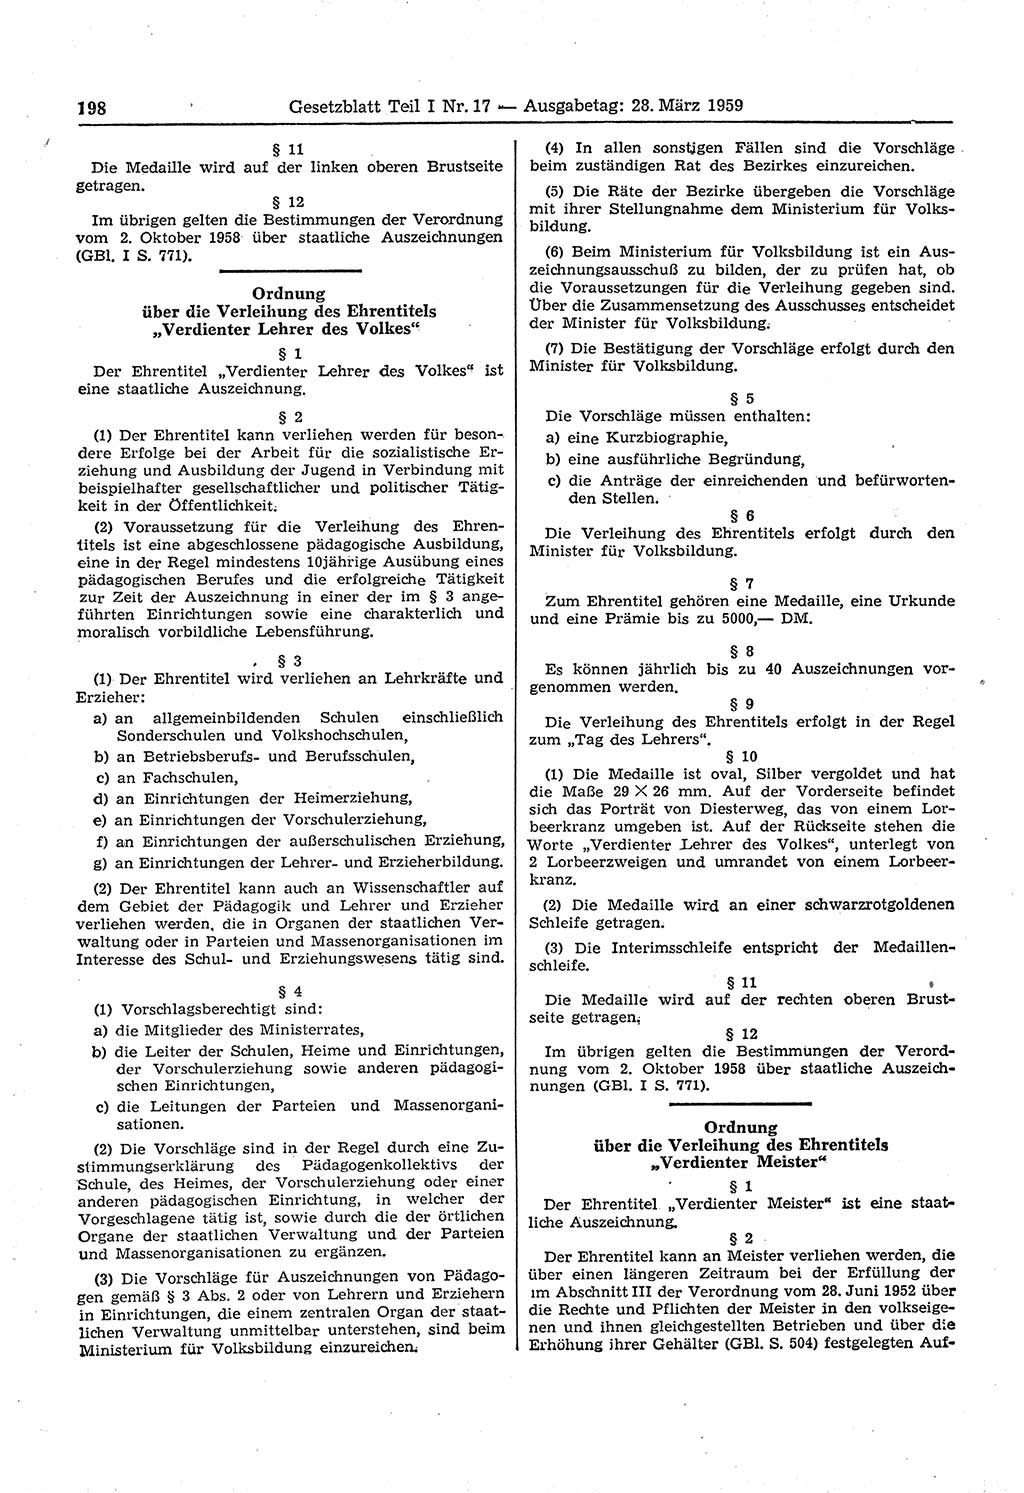 Gesetzblatt (GBl.) der Deutschen Demokratischen Republik (DDR) Teil Ⅰ 1959, Seite 198 (GBl. DDR Ⅰ 1959, S. 198)